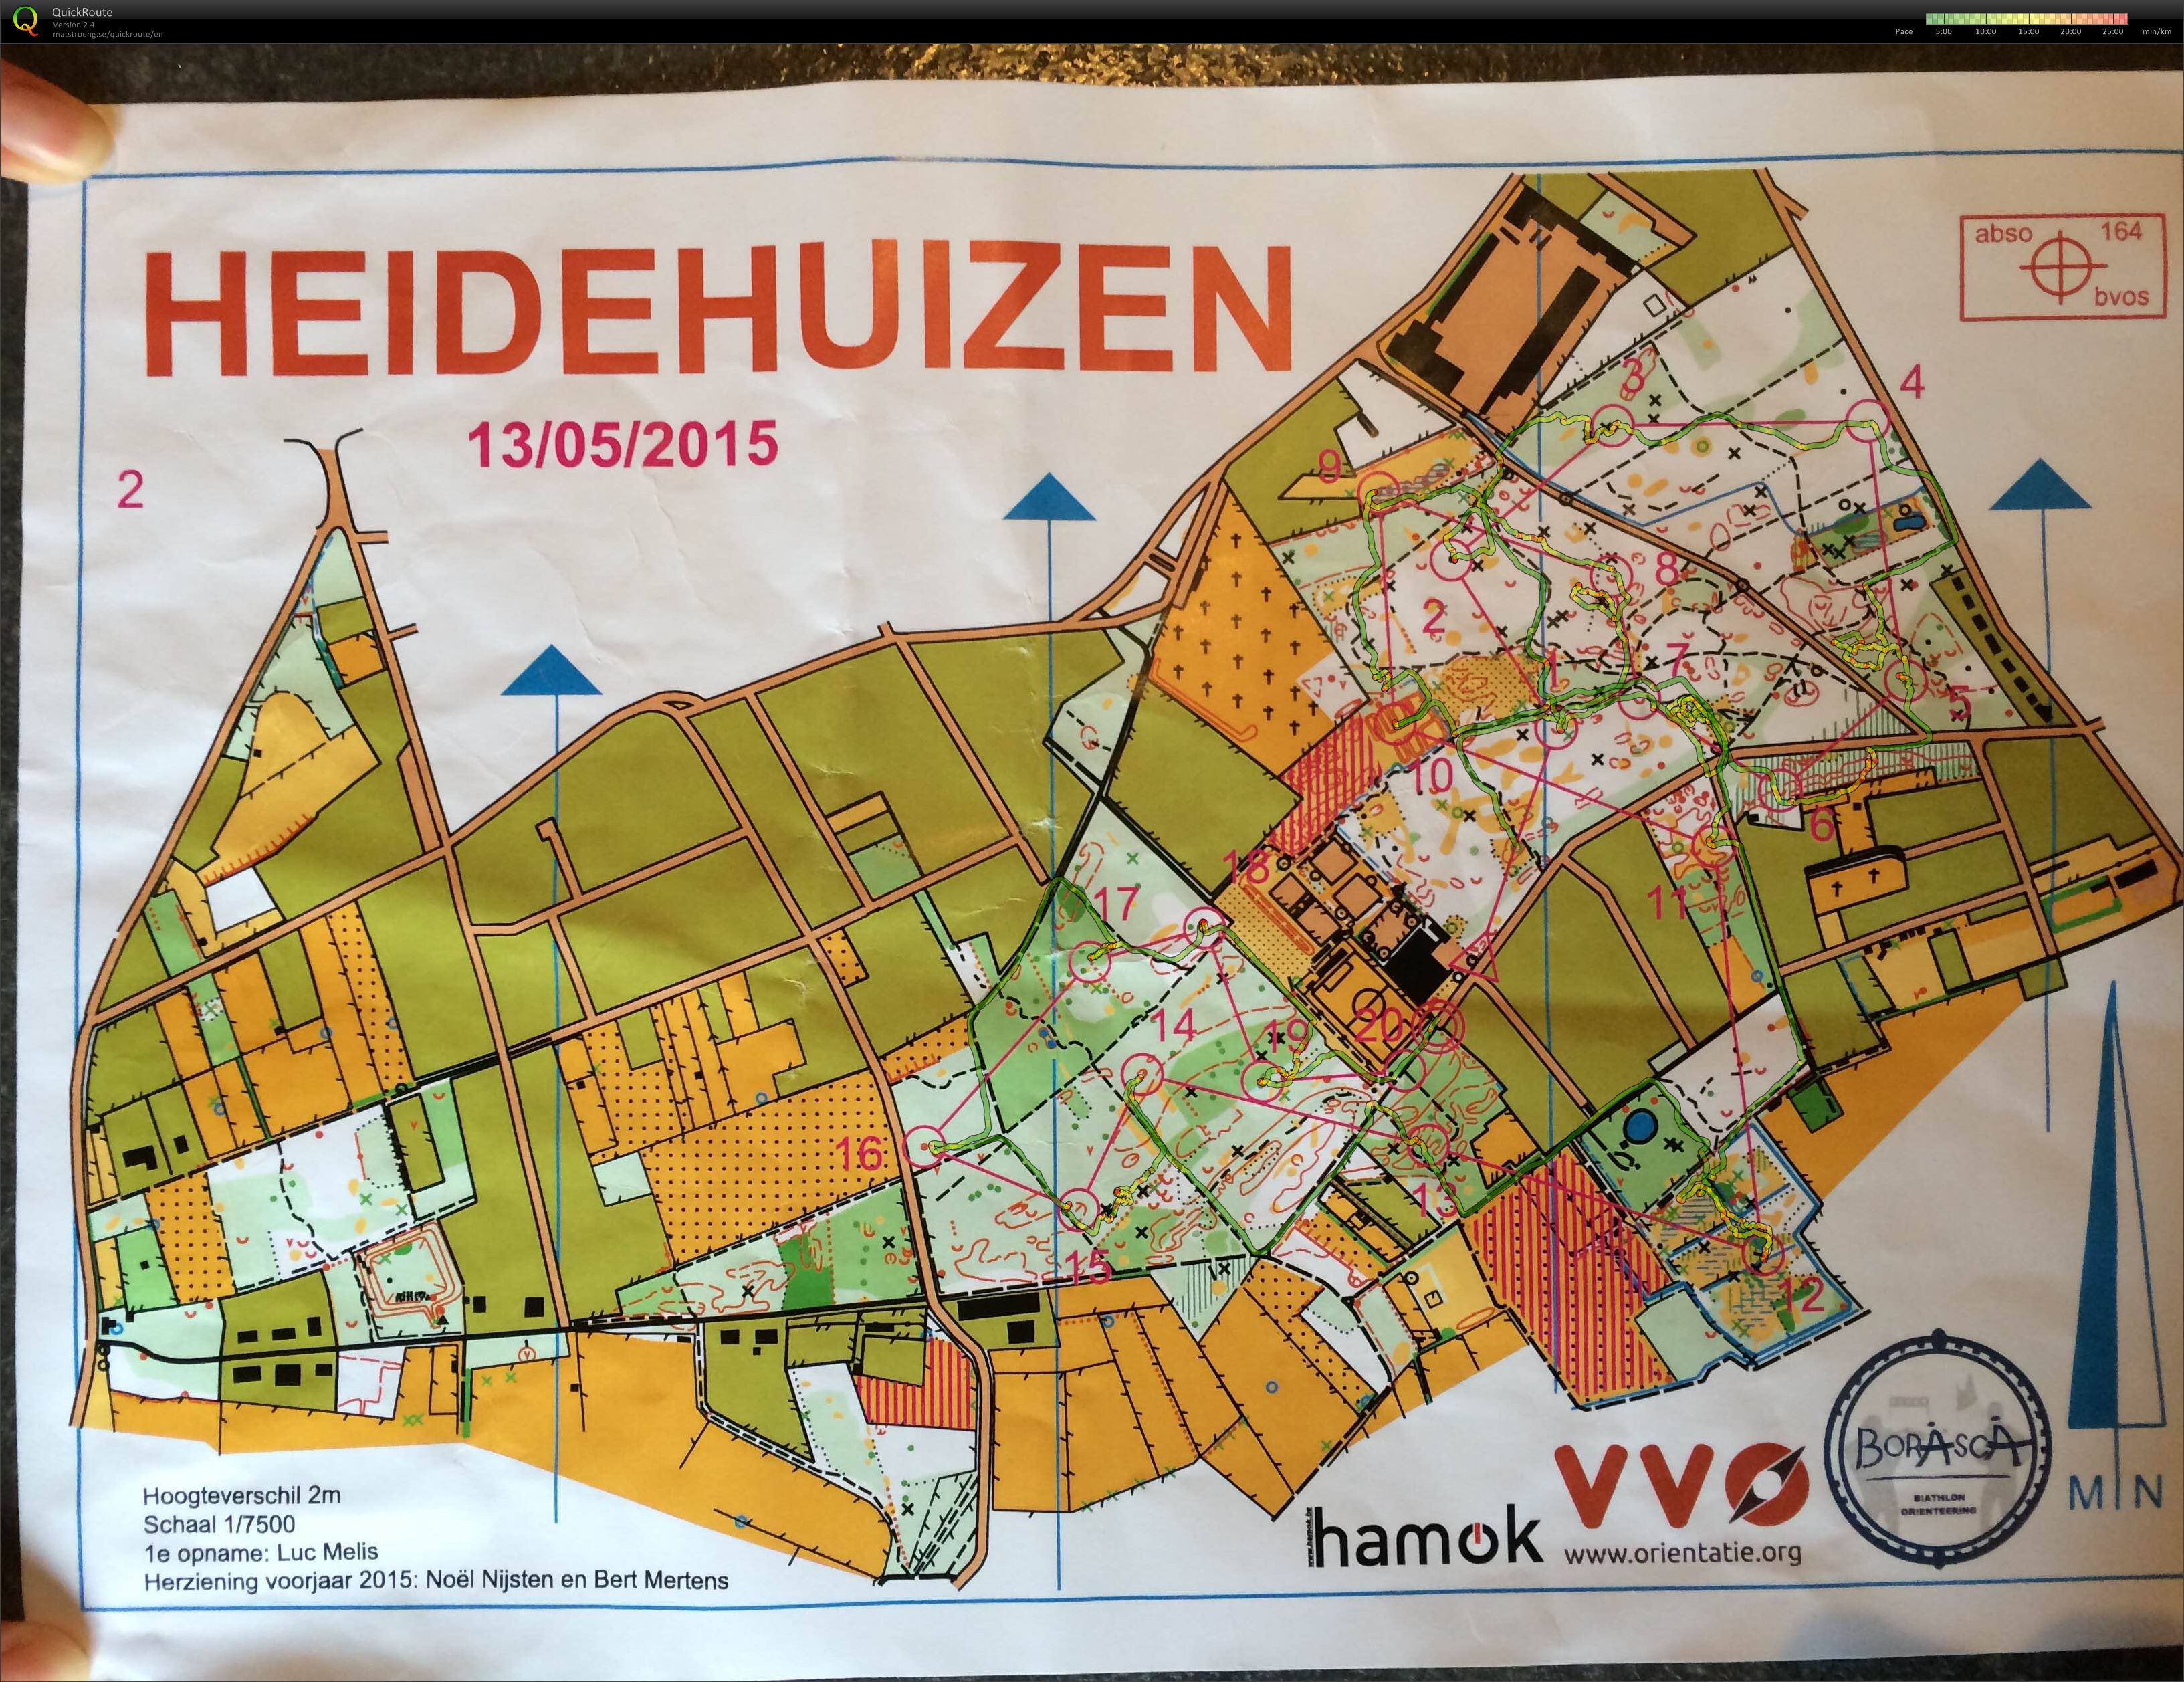 Heidehuizen (2015-06-13)